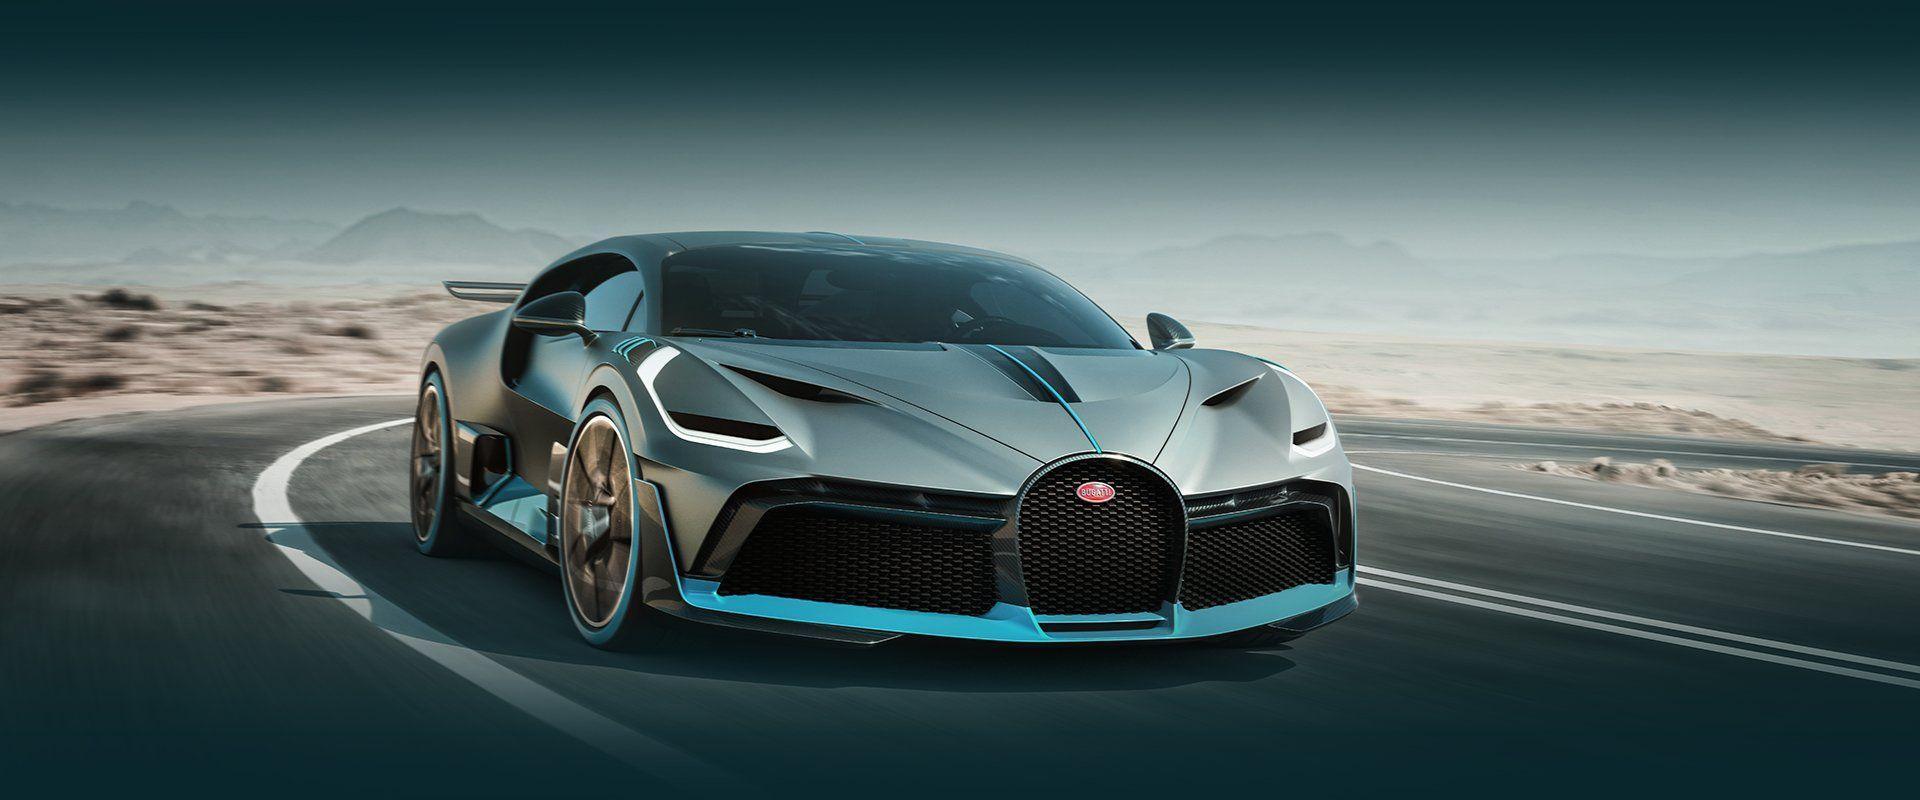 Bugatti Divo Wallpapers Top Free Bugatti Divo Backgrounds Wallpaperaccess